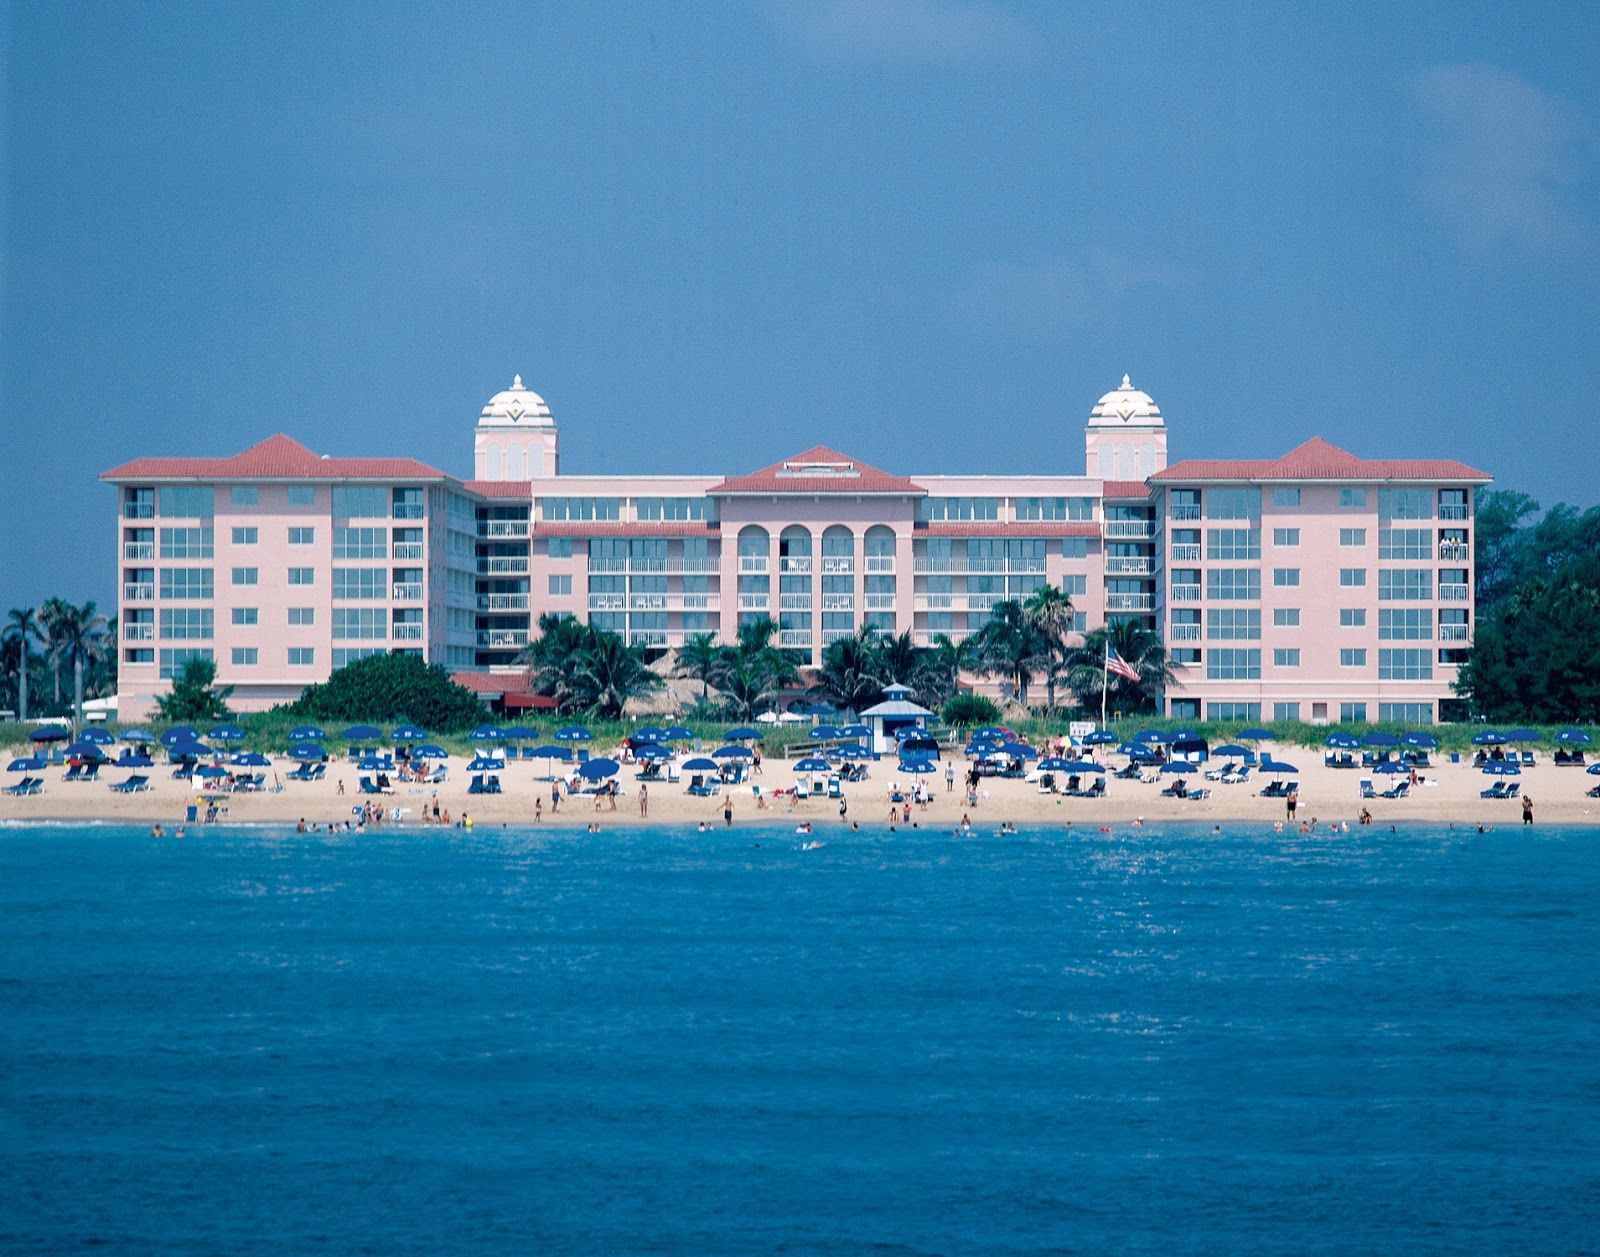 Fotografie cu Riviera beach - locul popular printre cunoscătorii de relaxare